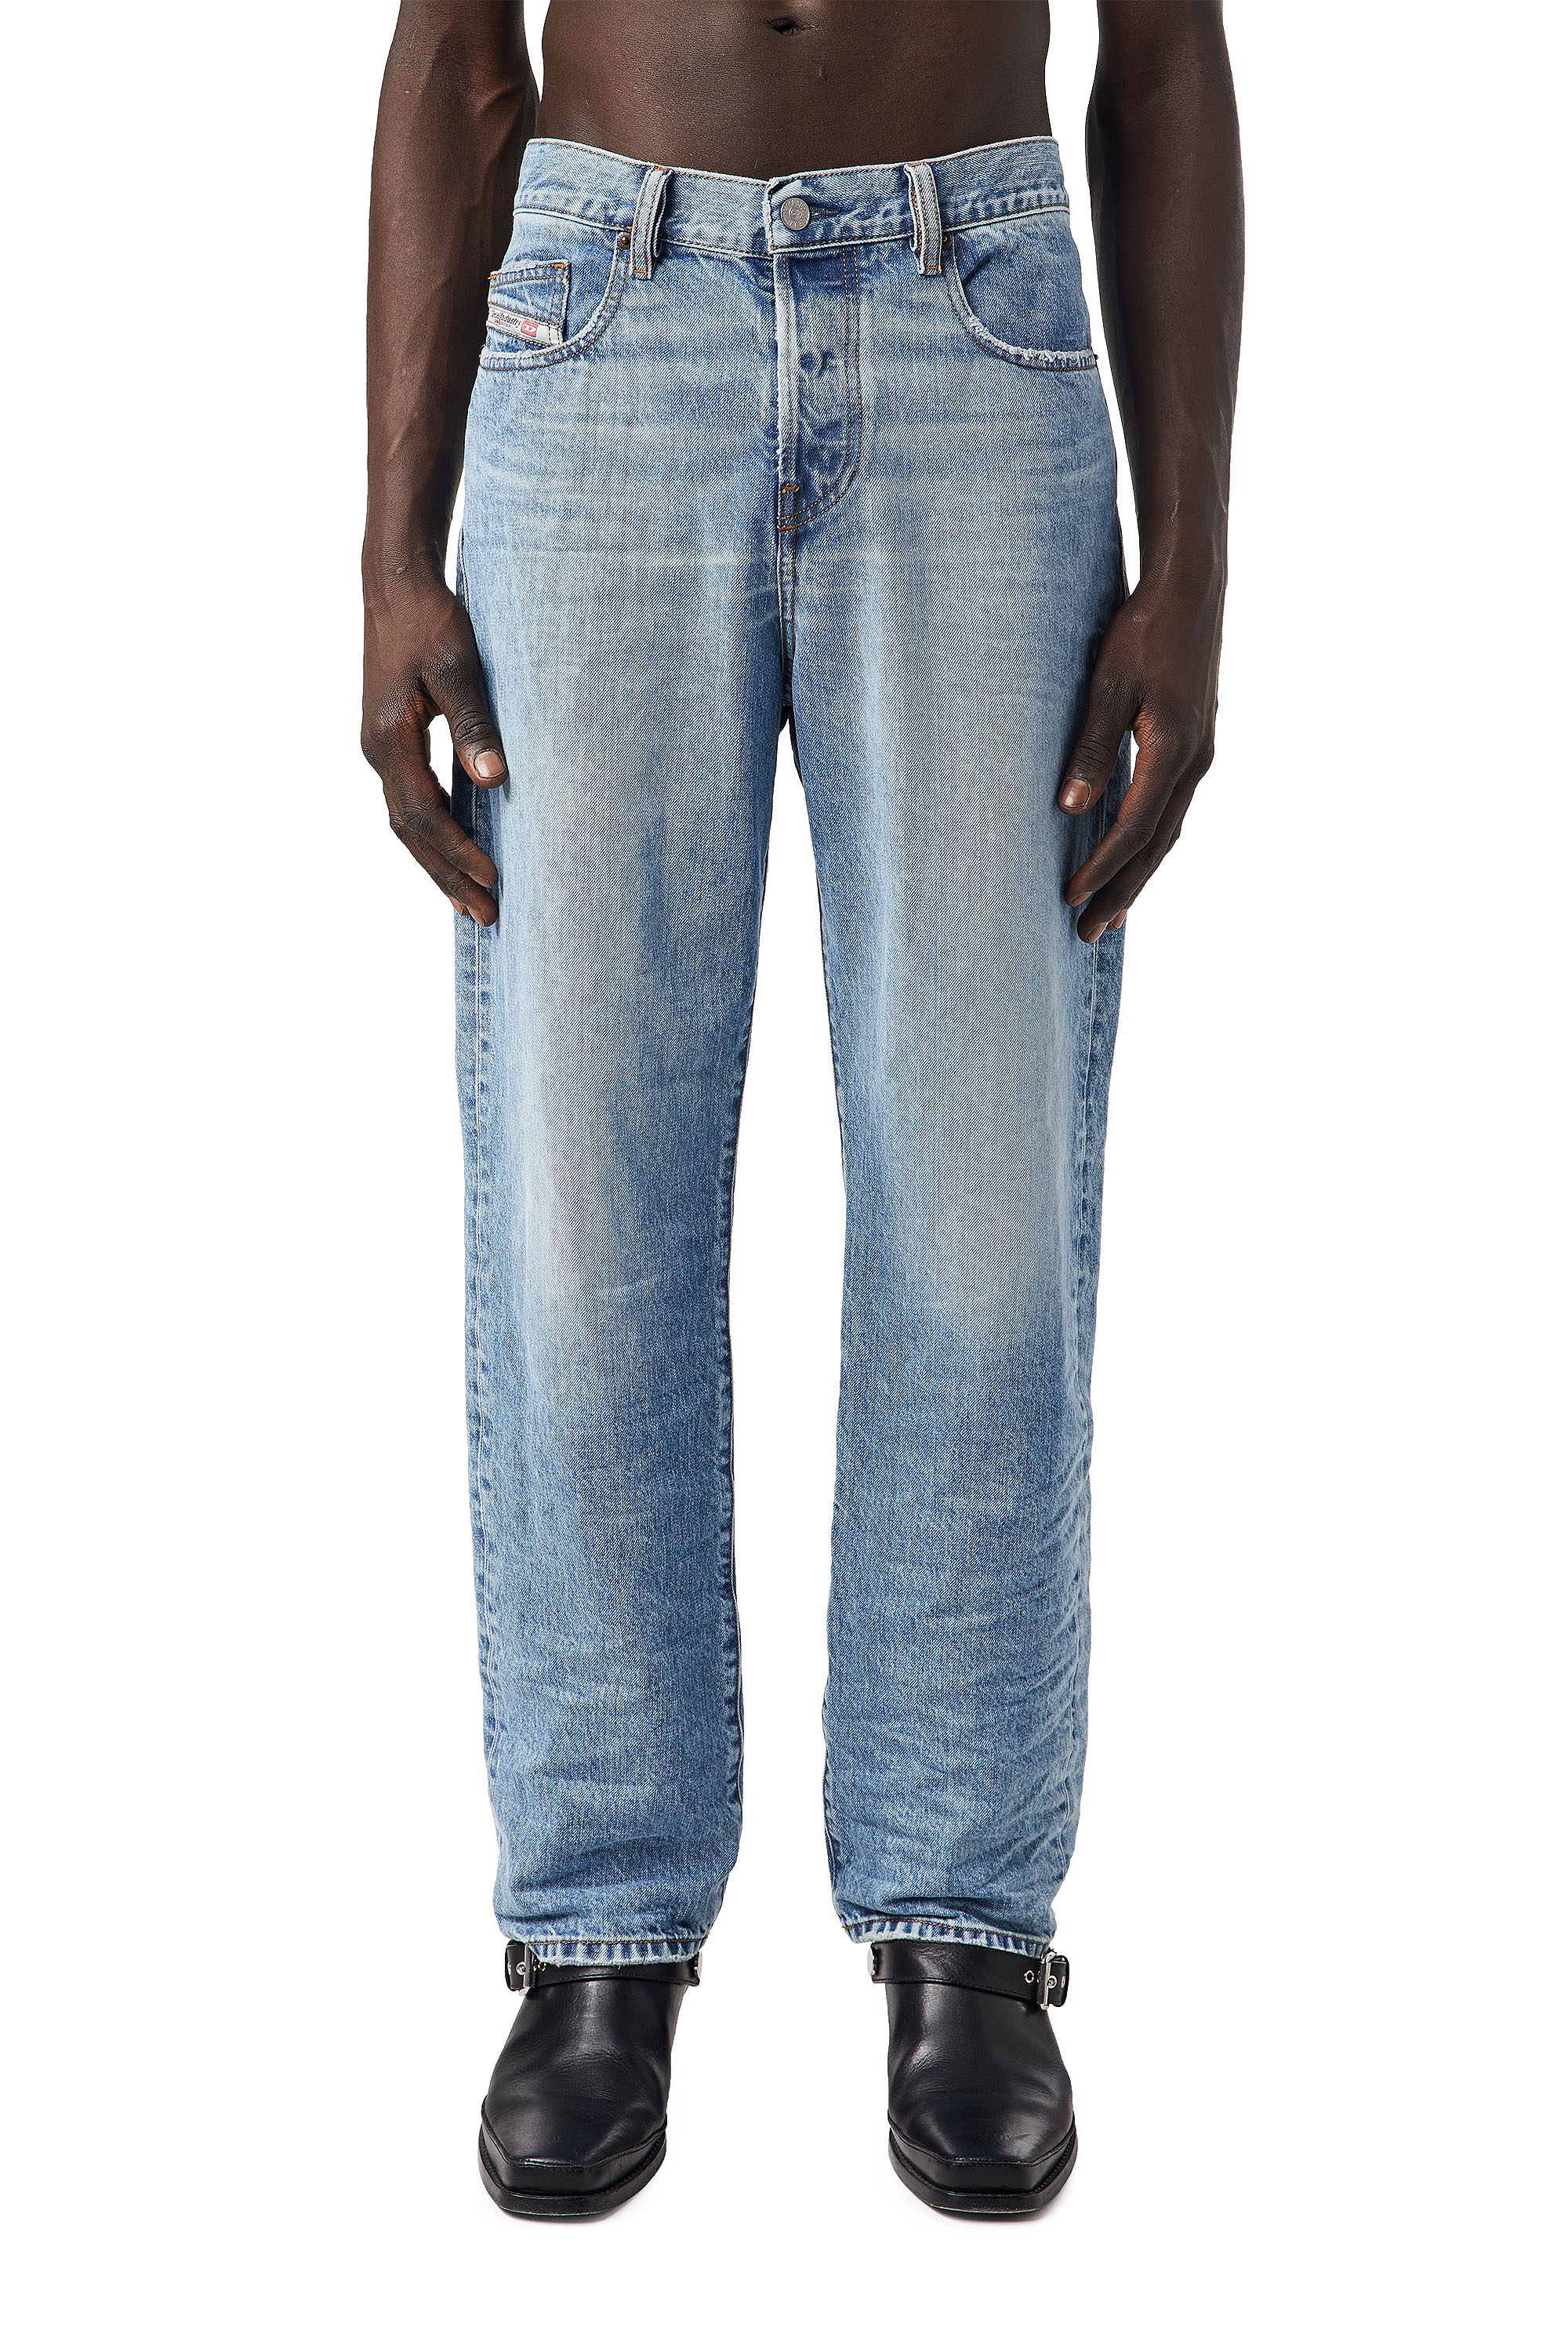 Super skinny fit jeans herren - Wählen Sie dem Testsieger